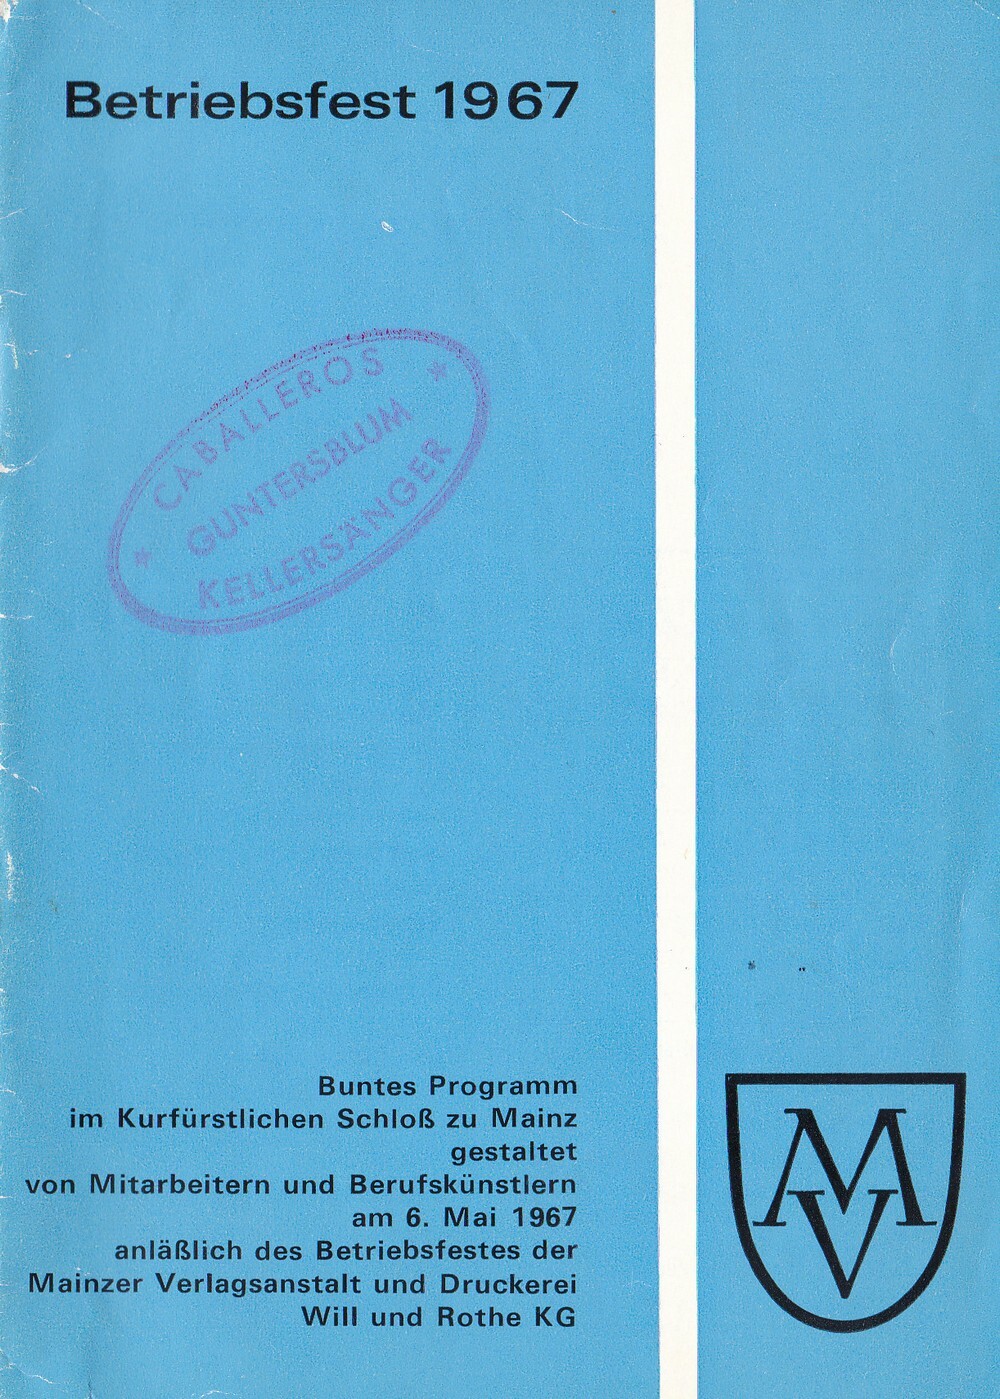 Betriebsfest der Mainzer Verlagsanstalt 1967 (Kulturverein Guntersblum CC BY-NC-SA)